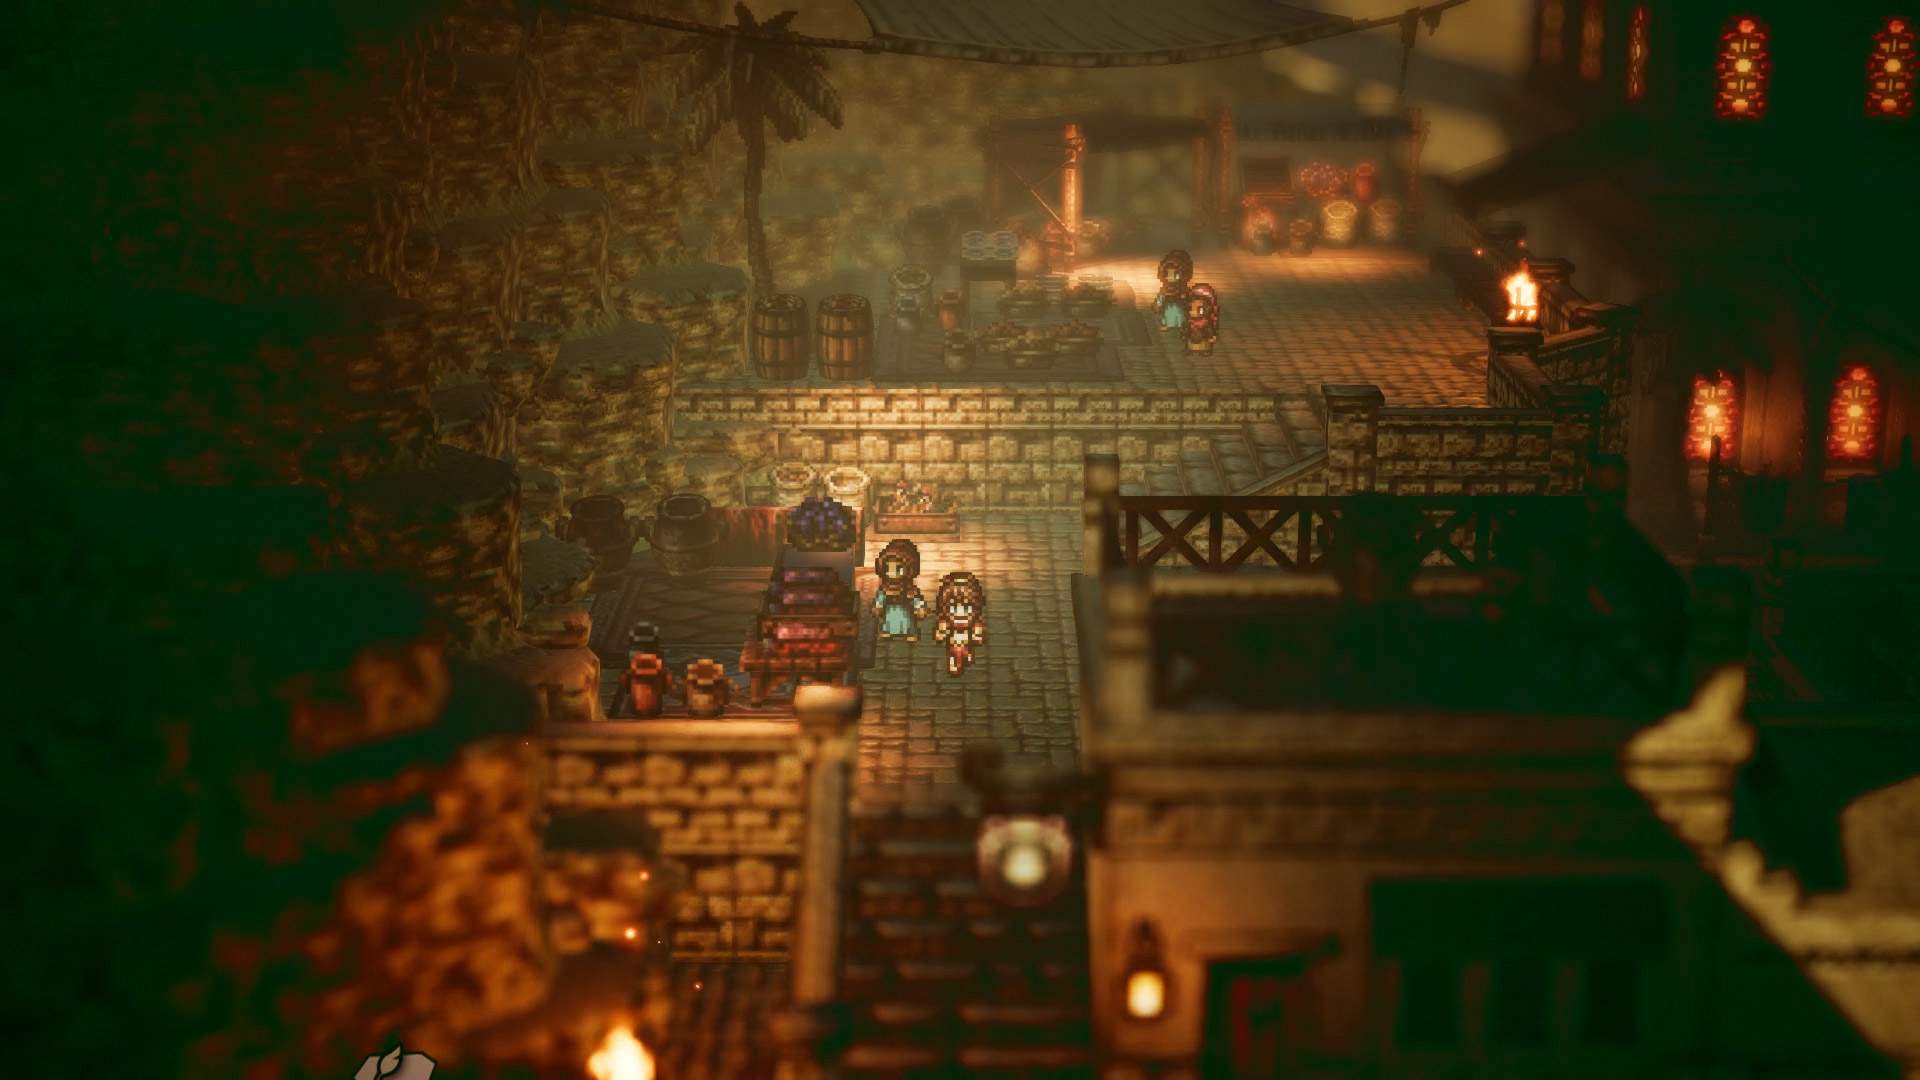 Captura de tela do jogo: Primrose cruzando com outro personagem em meio a uma vila medieval.